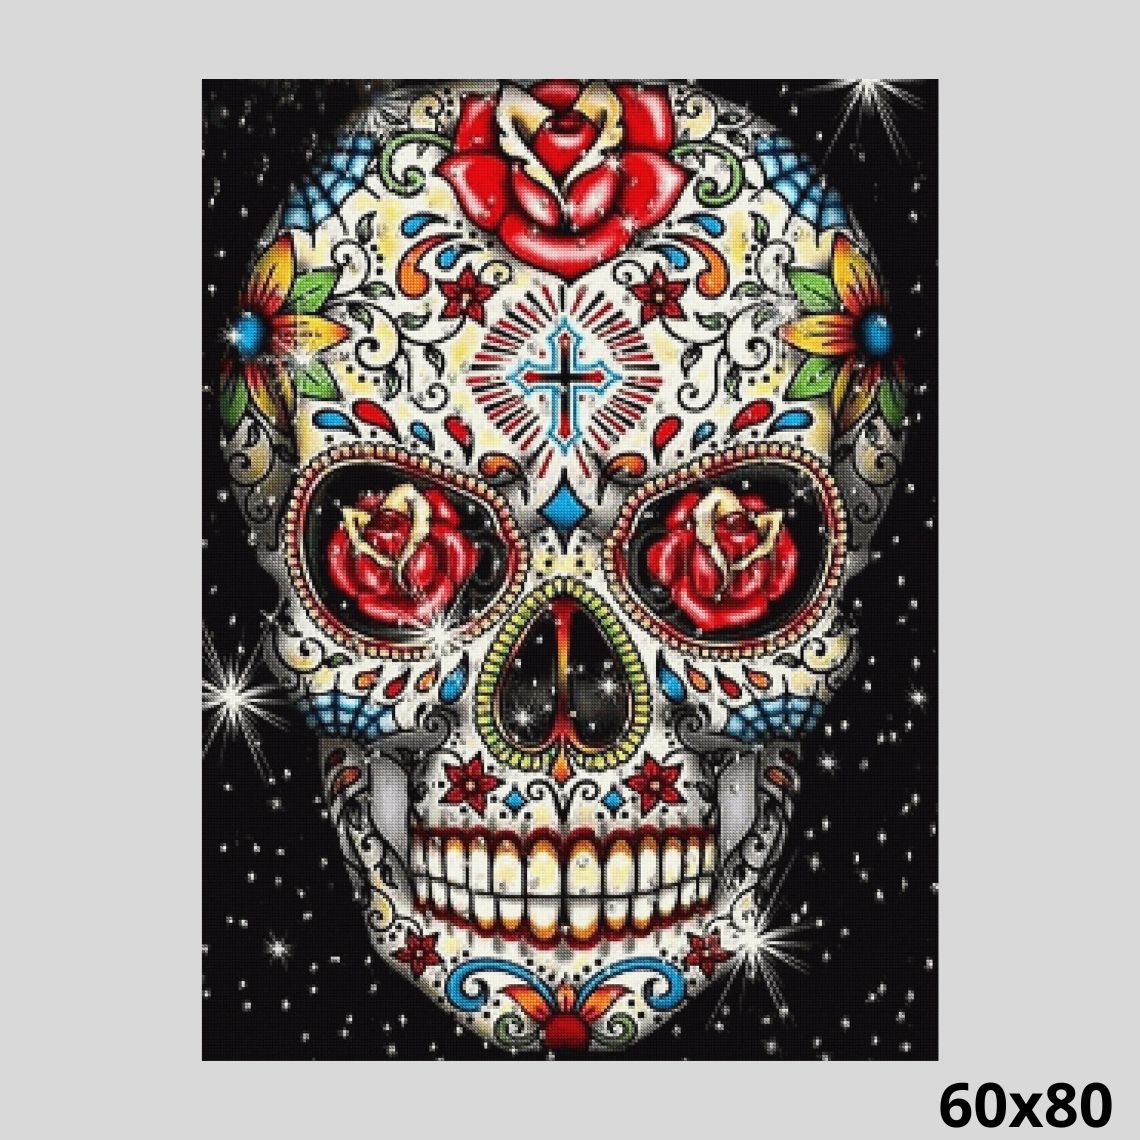 Folk Art Painted Skull 60x80 - Diamond Painting